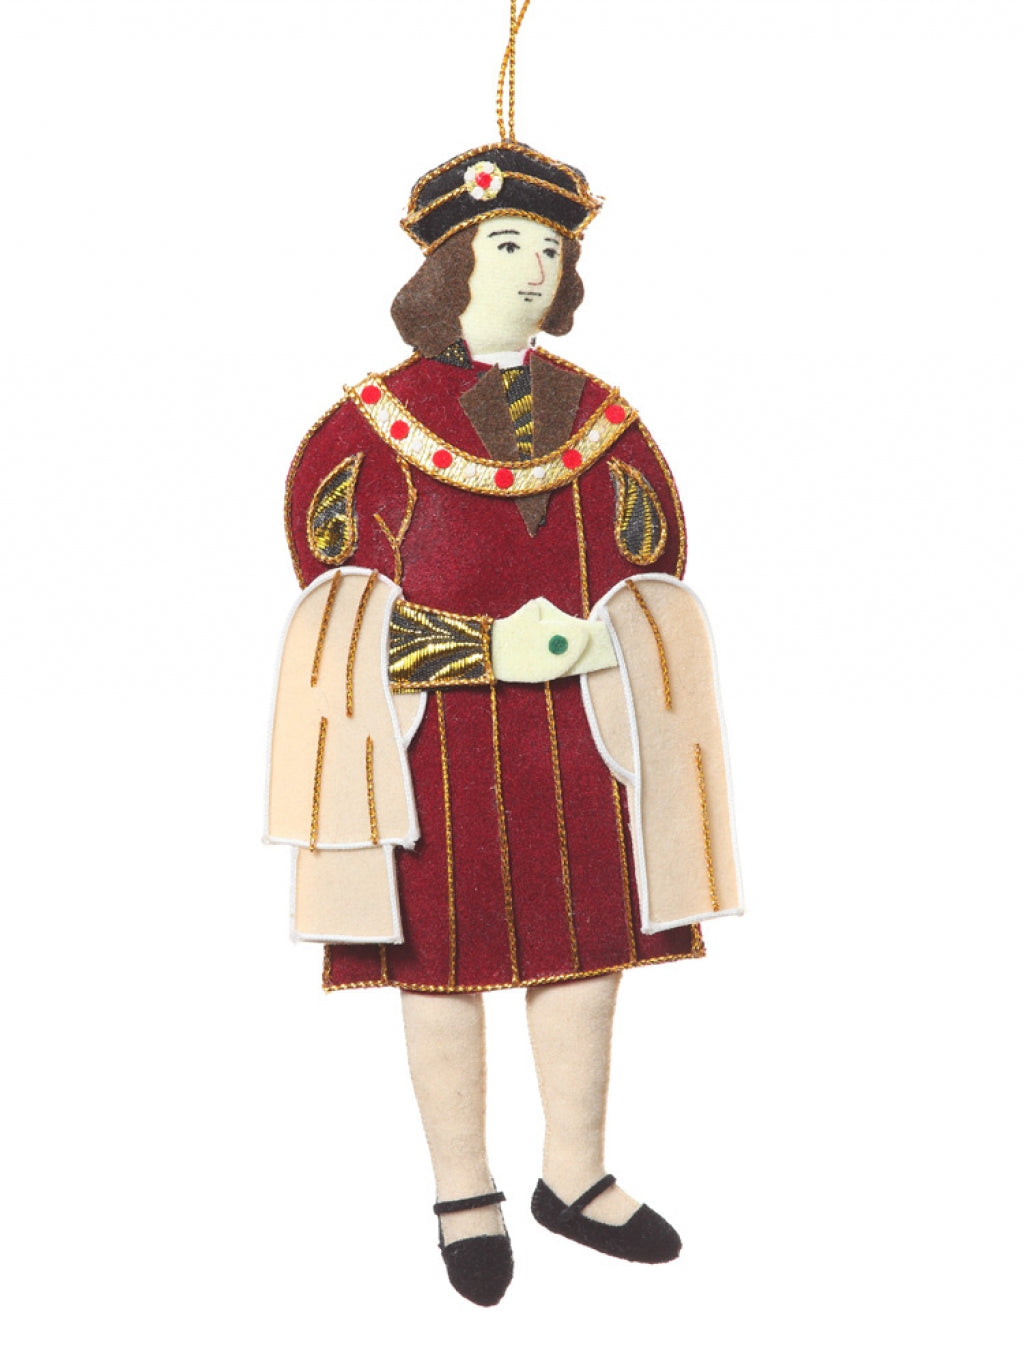 King Richard III Decoration